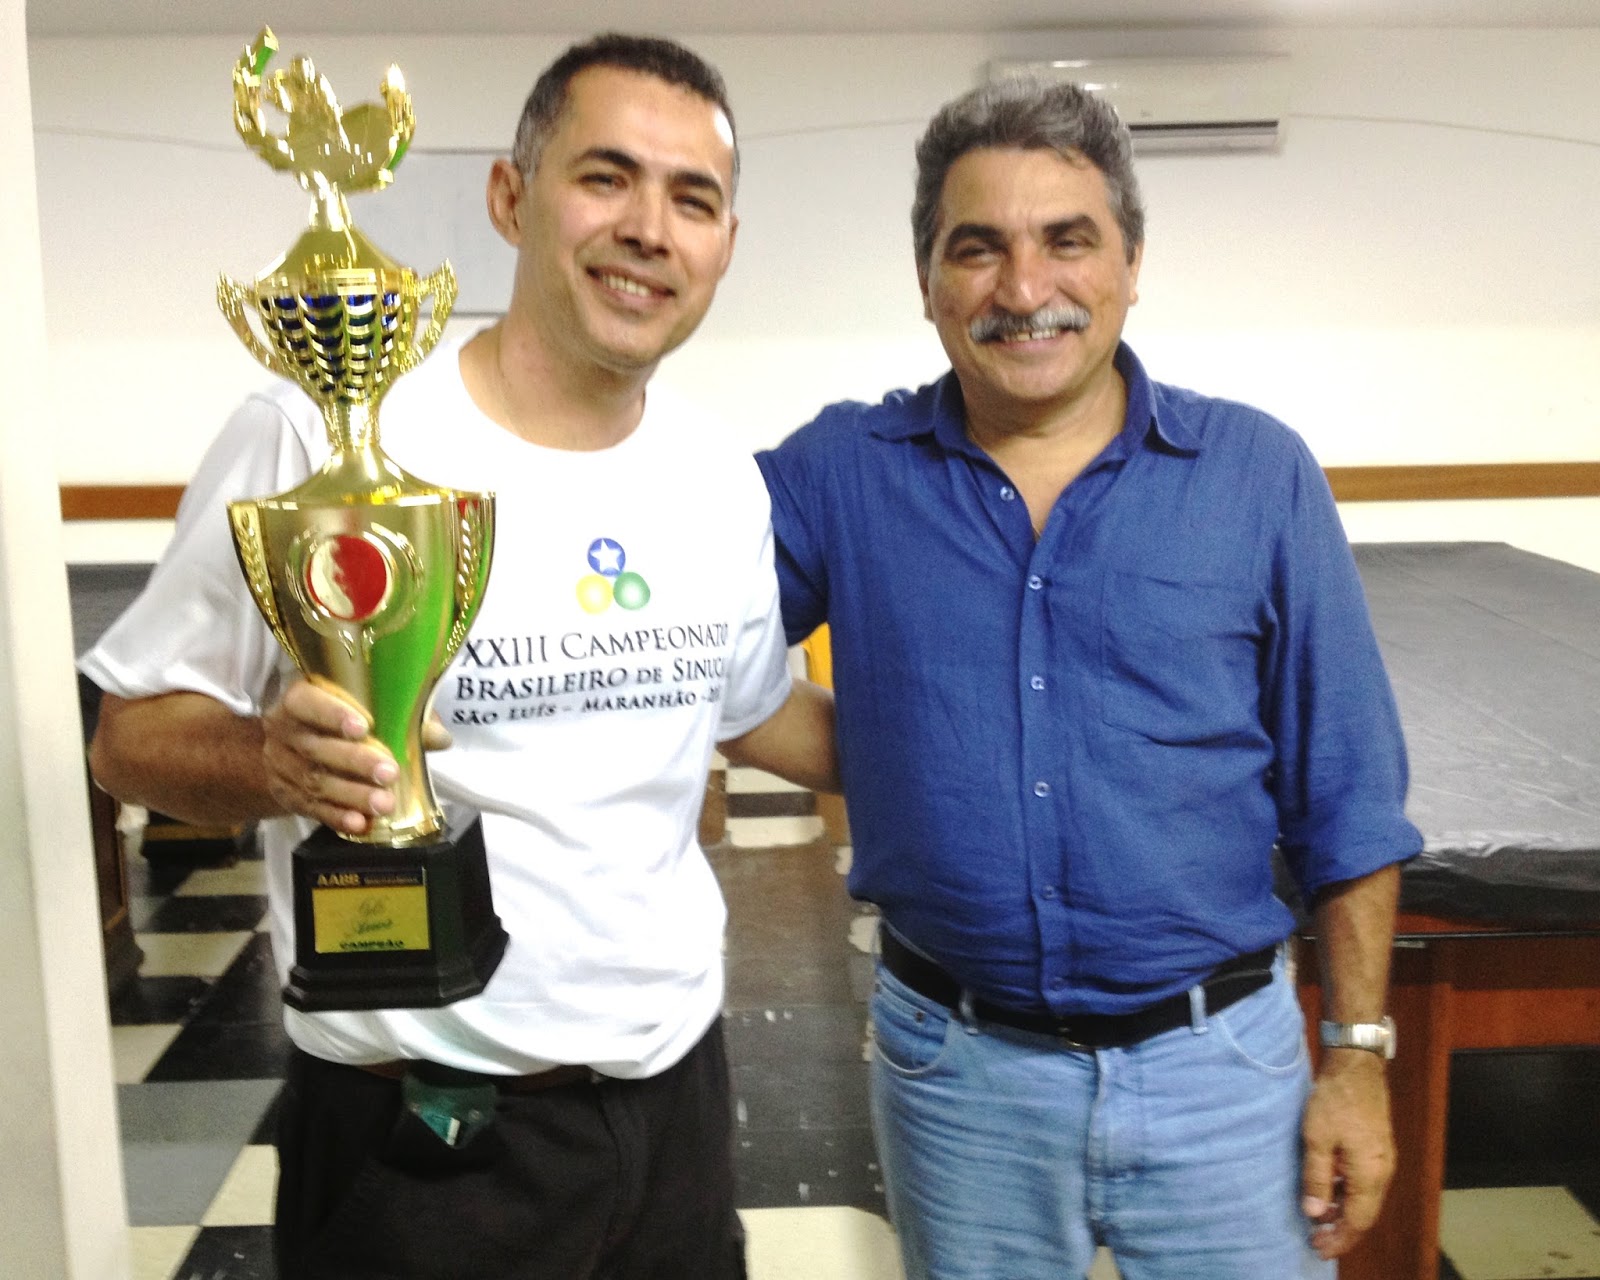 Terezópolis terá torneio de sinuca com premiação de R$ 5 mil